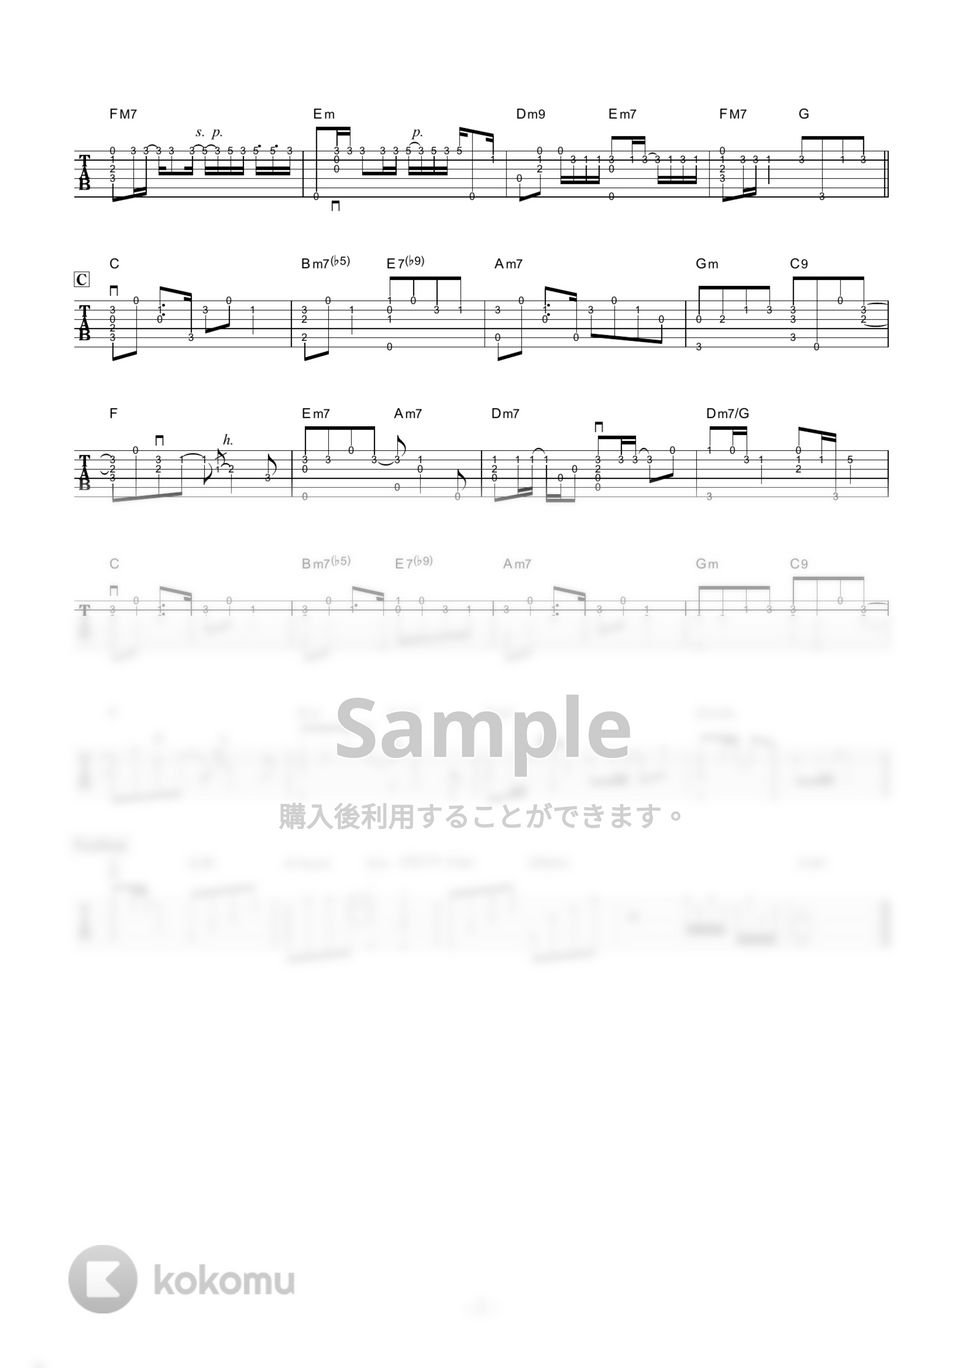 TEE - ベイビー・アイラブユー (ソロギター / ショートアレンジ) by 伴奏屋TAB譜